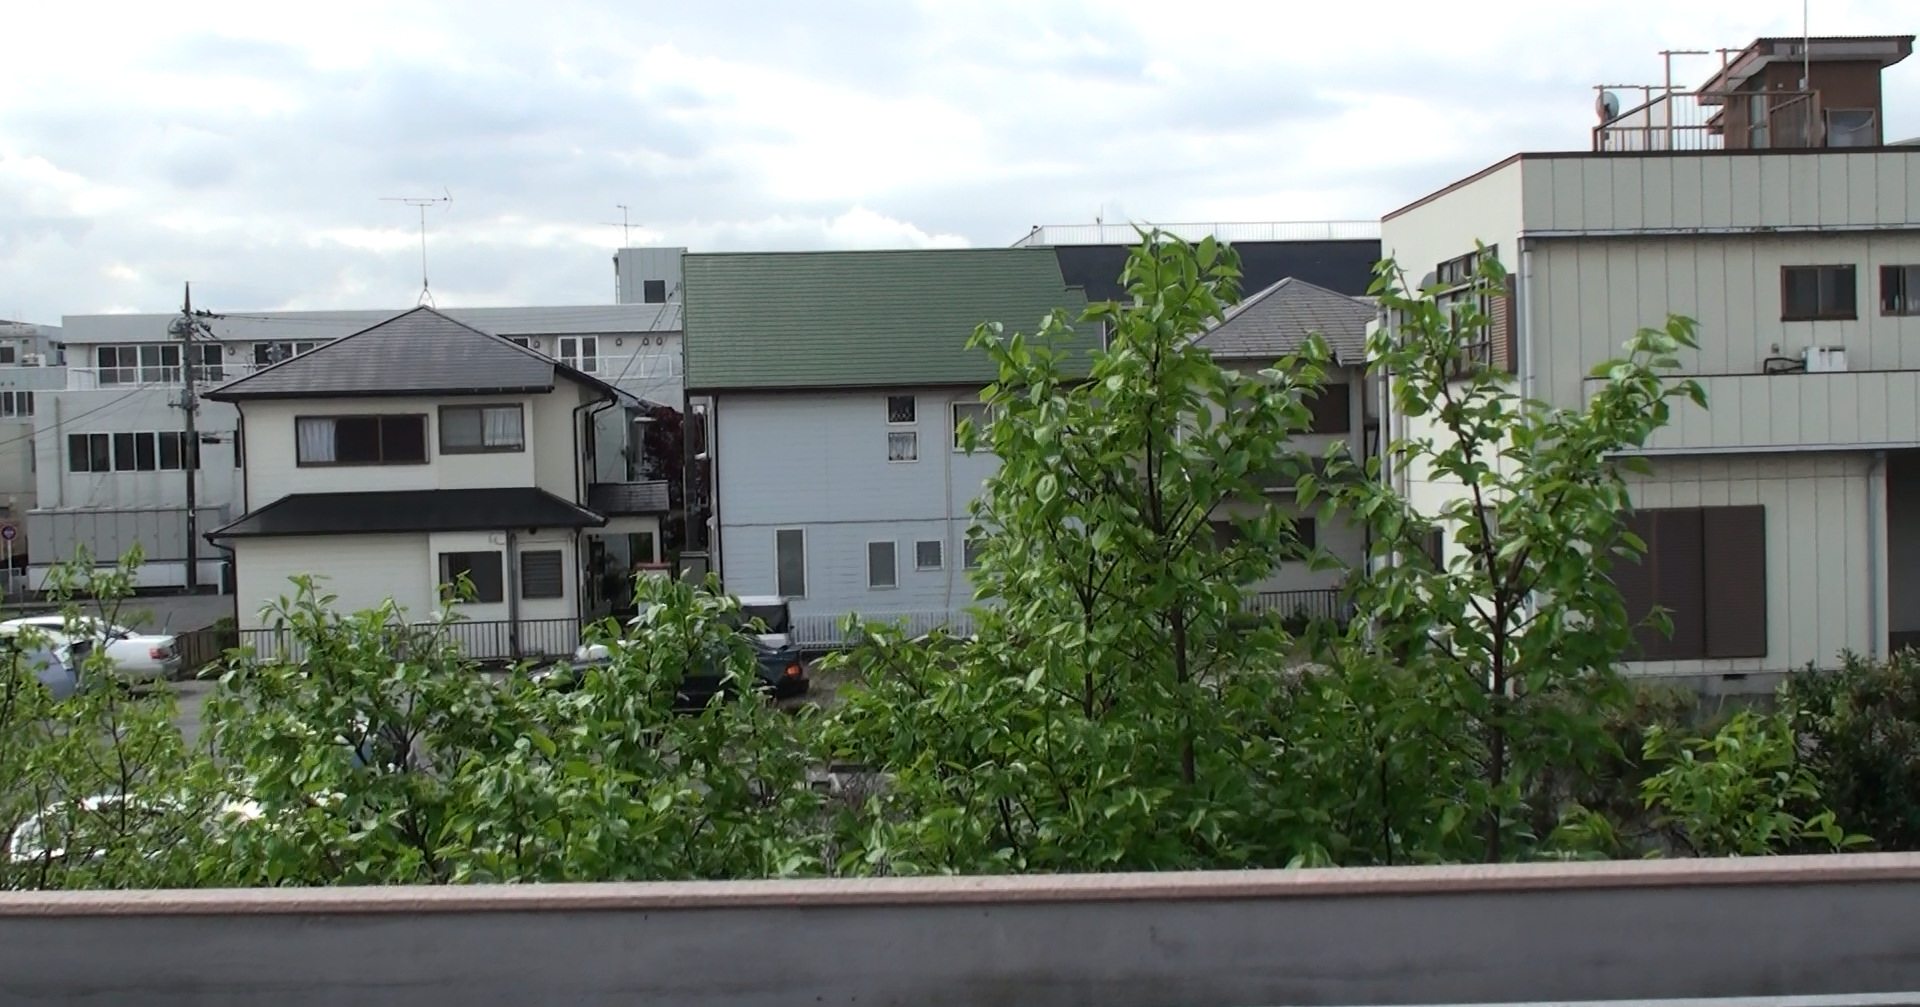 ハイビジョンビデオカメラで撮影した動画。柿の葉